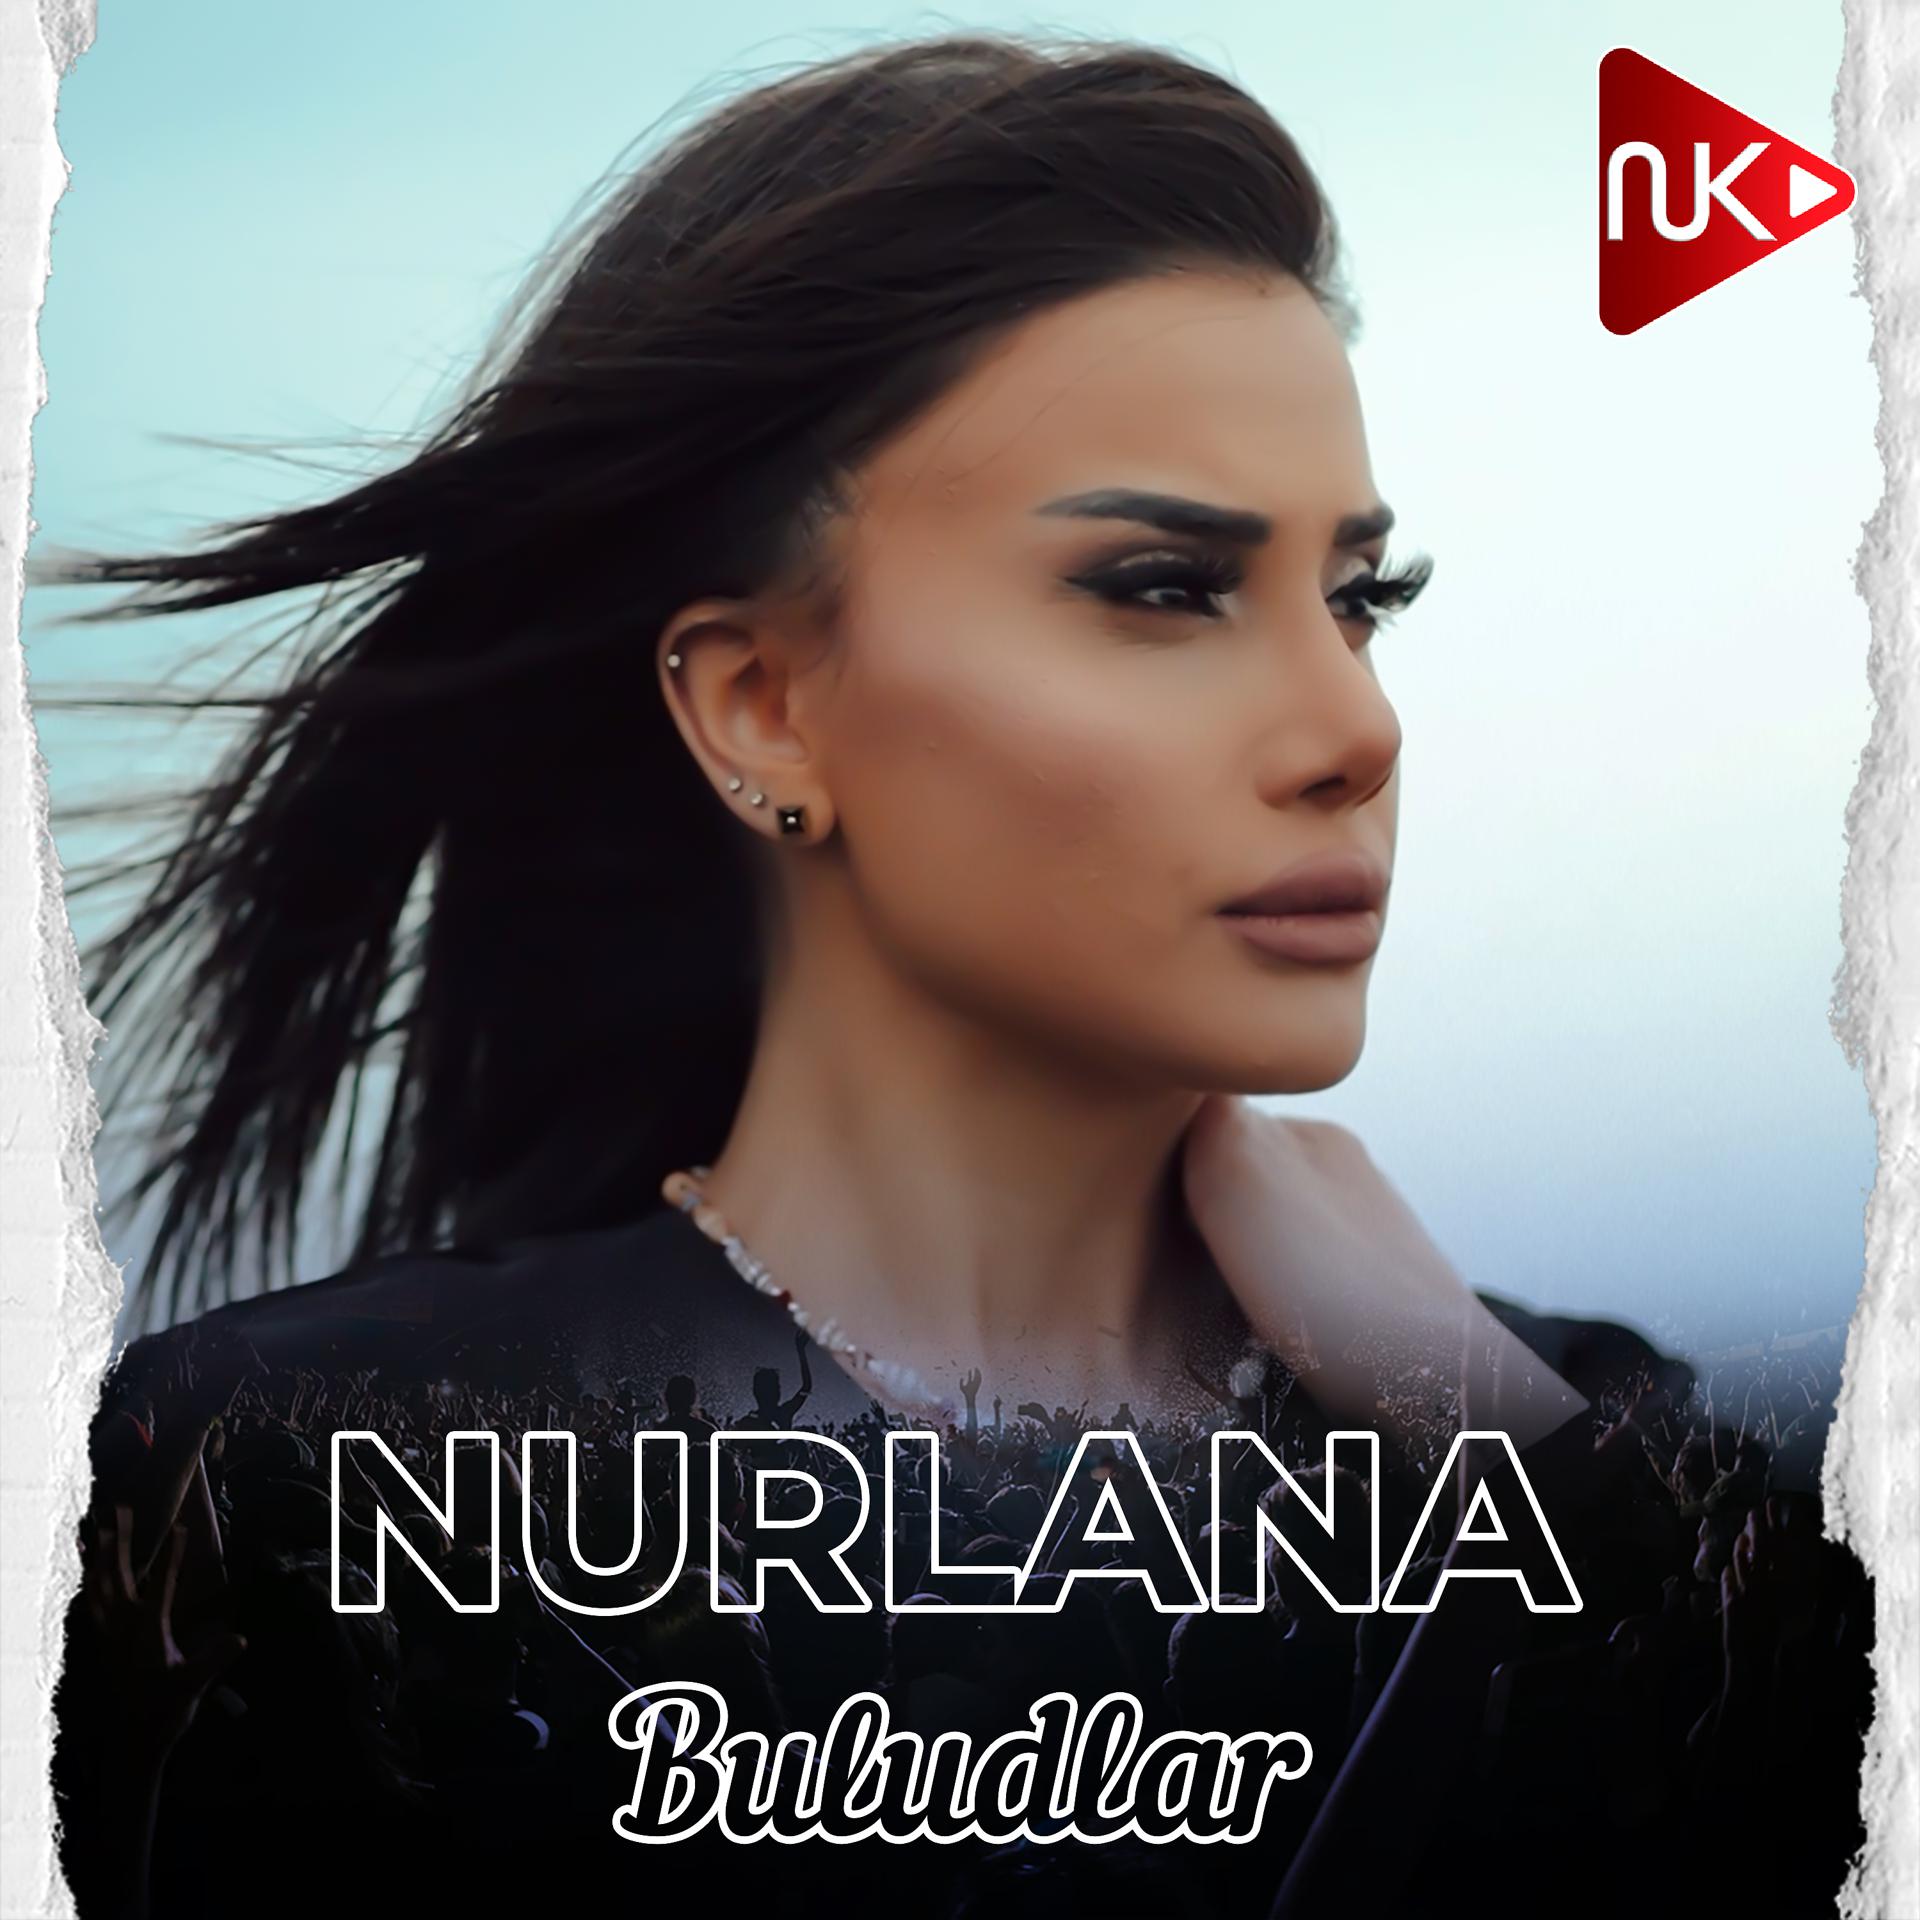 Постер альбома Buludlar